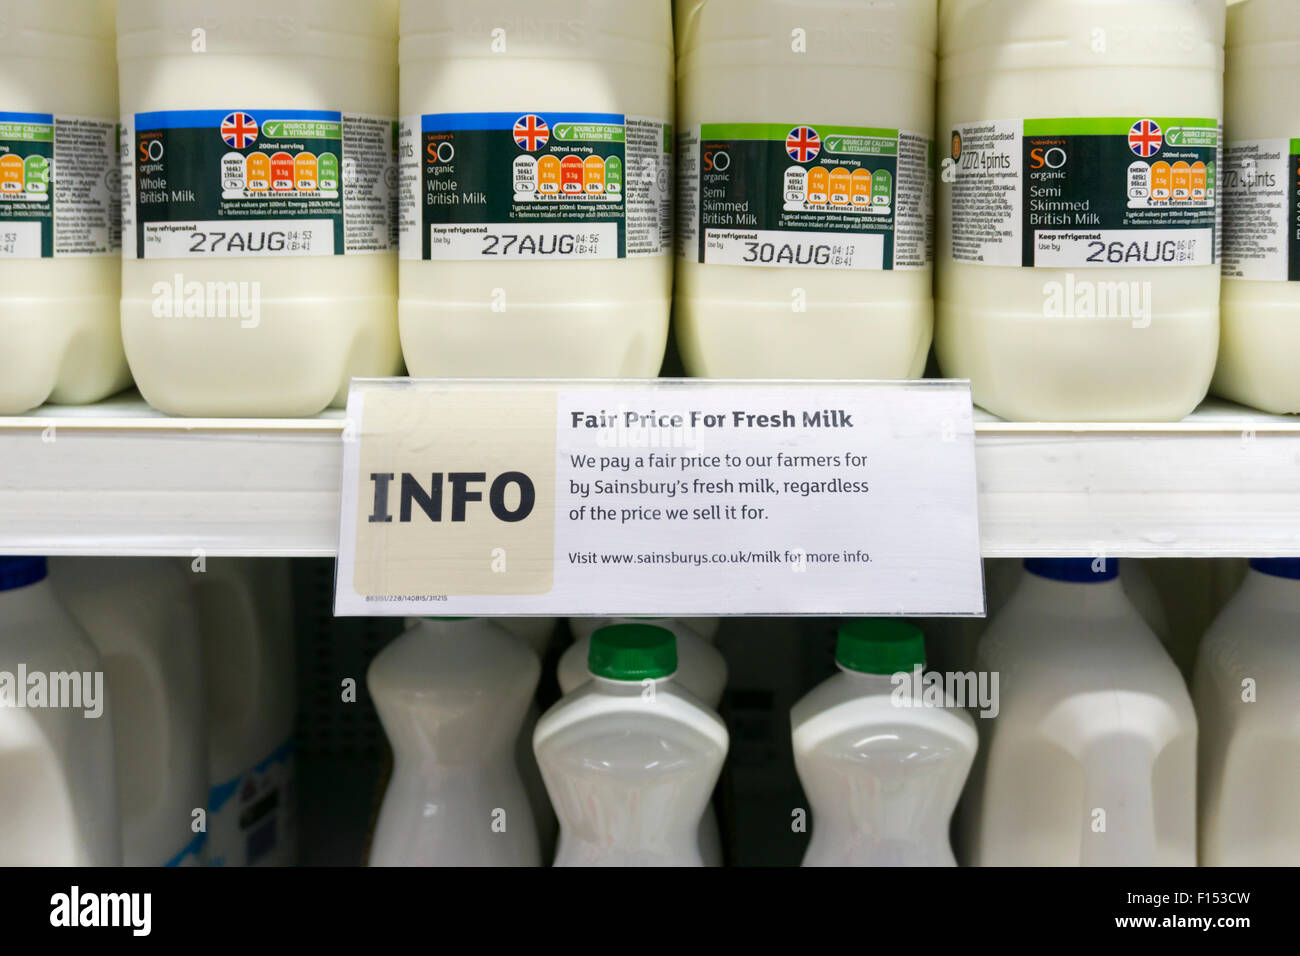 Un signe sur une étagère de supermarché dit que les agriculteurs sont payés un prix juste pour le lait. Voir les détails dans la description. Banque D'Images